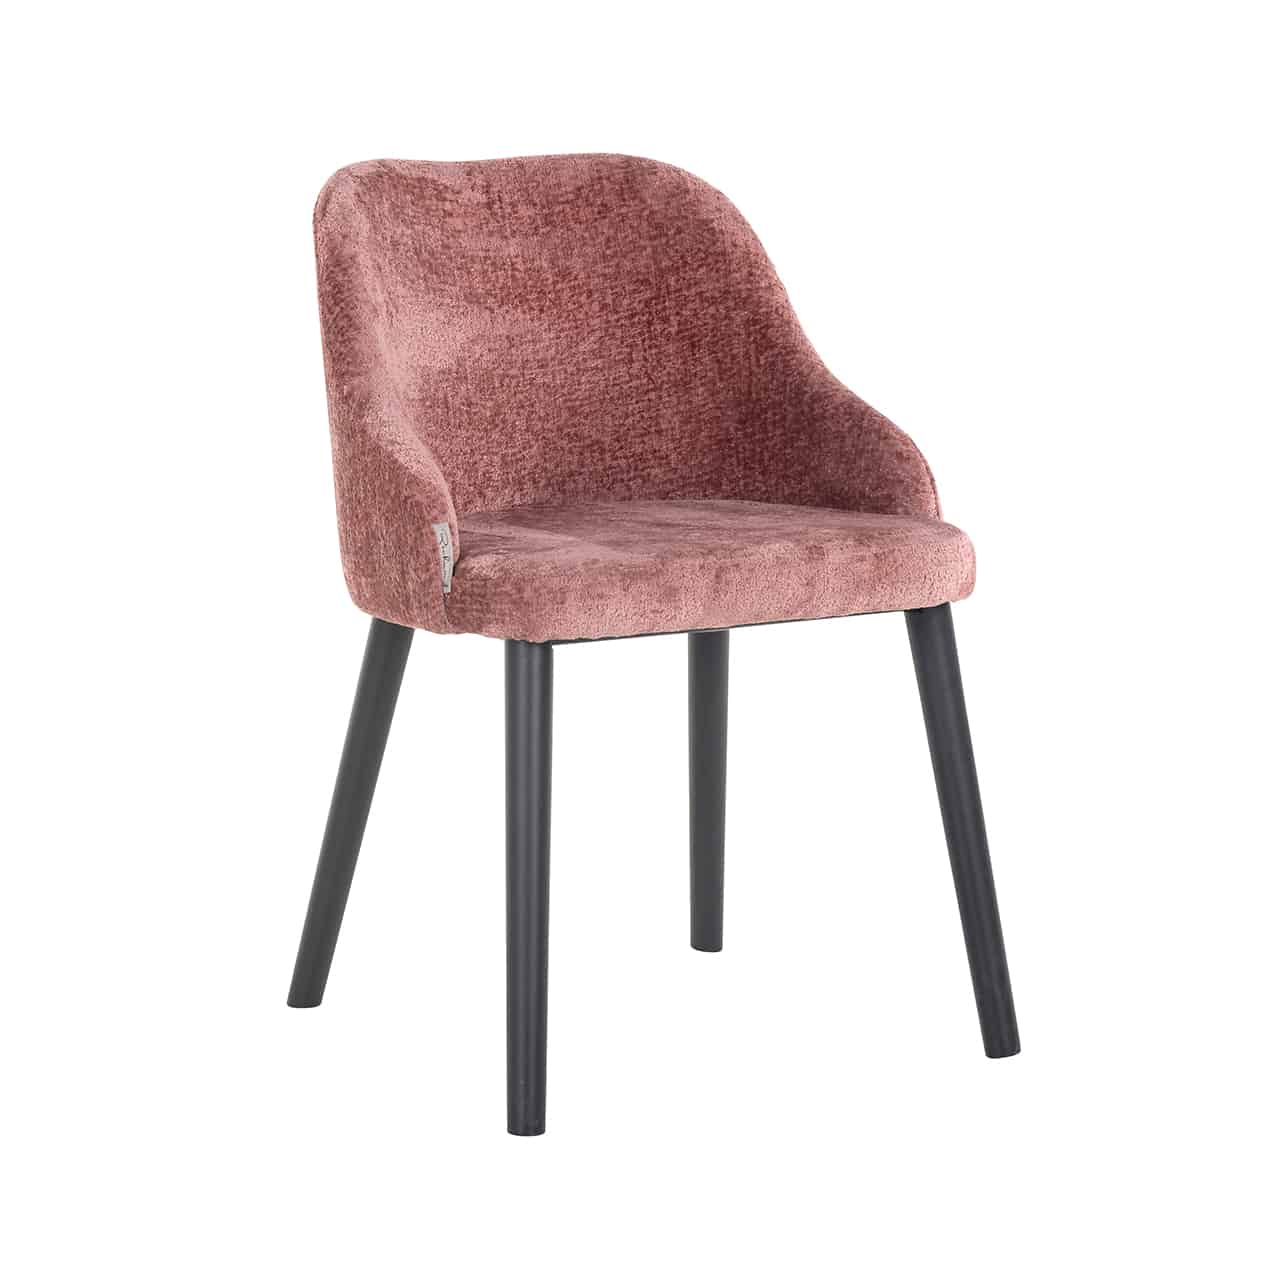 Vollpolsterstuhl mit flauschigem rosa Chenille bezogen; runde Rückenlehne mit angedeuteten Armstützen; kräftige, leicht nach außen stehende, schwarze Beine.